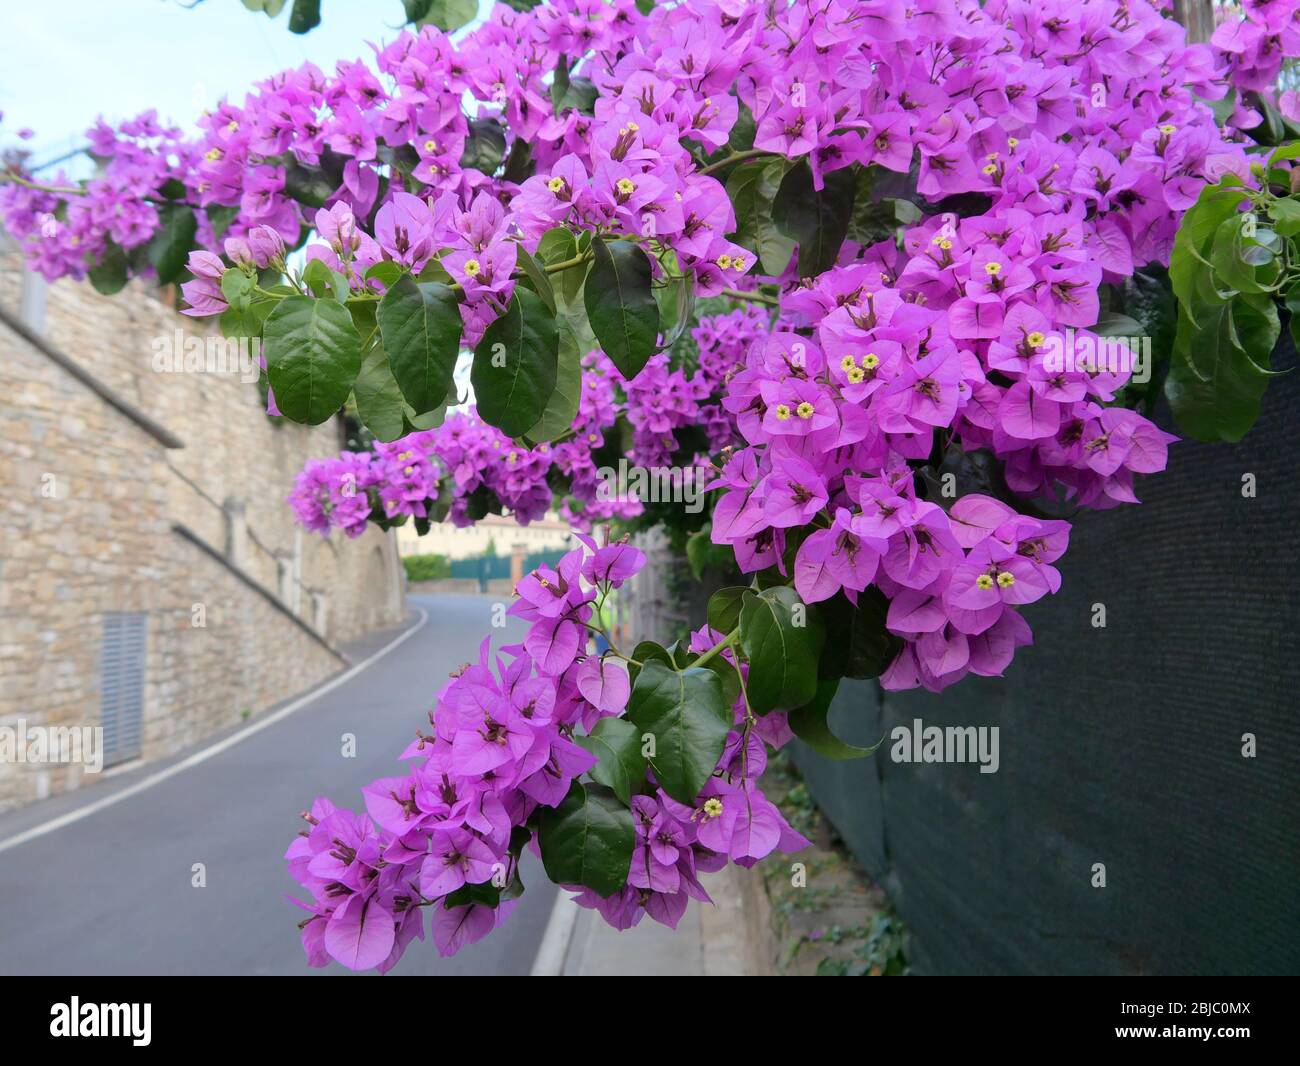 Gros plan de bougainvillea ou de fleur de papier magenta ou pourpre en fleurs en Europe Banque D'Images